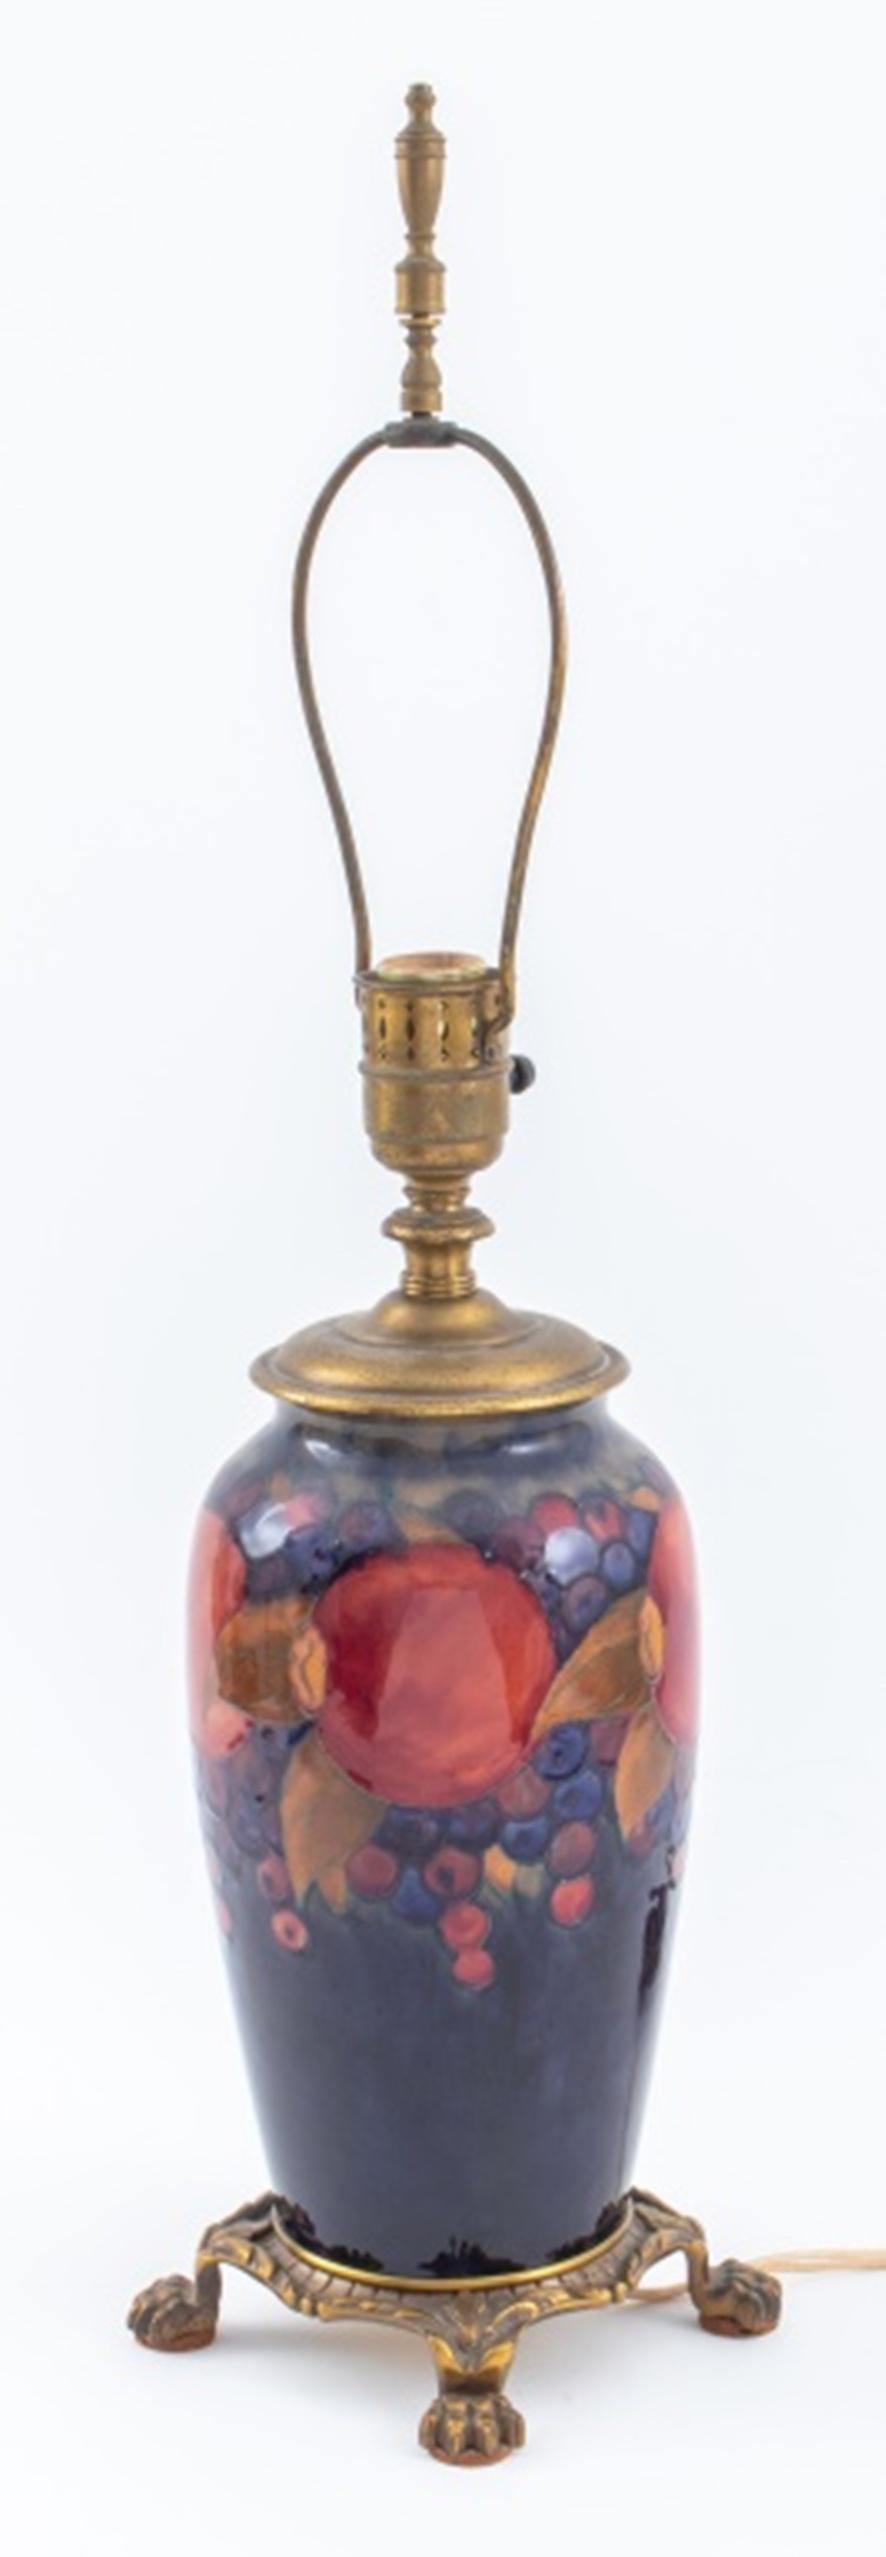 British Moorcroft Pottery glazed ceramic baluster vase in the 